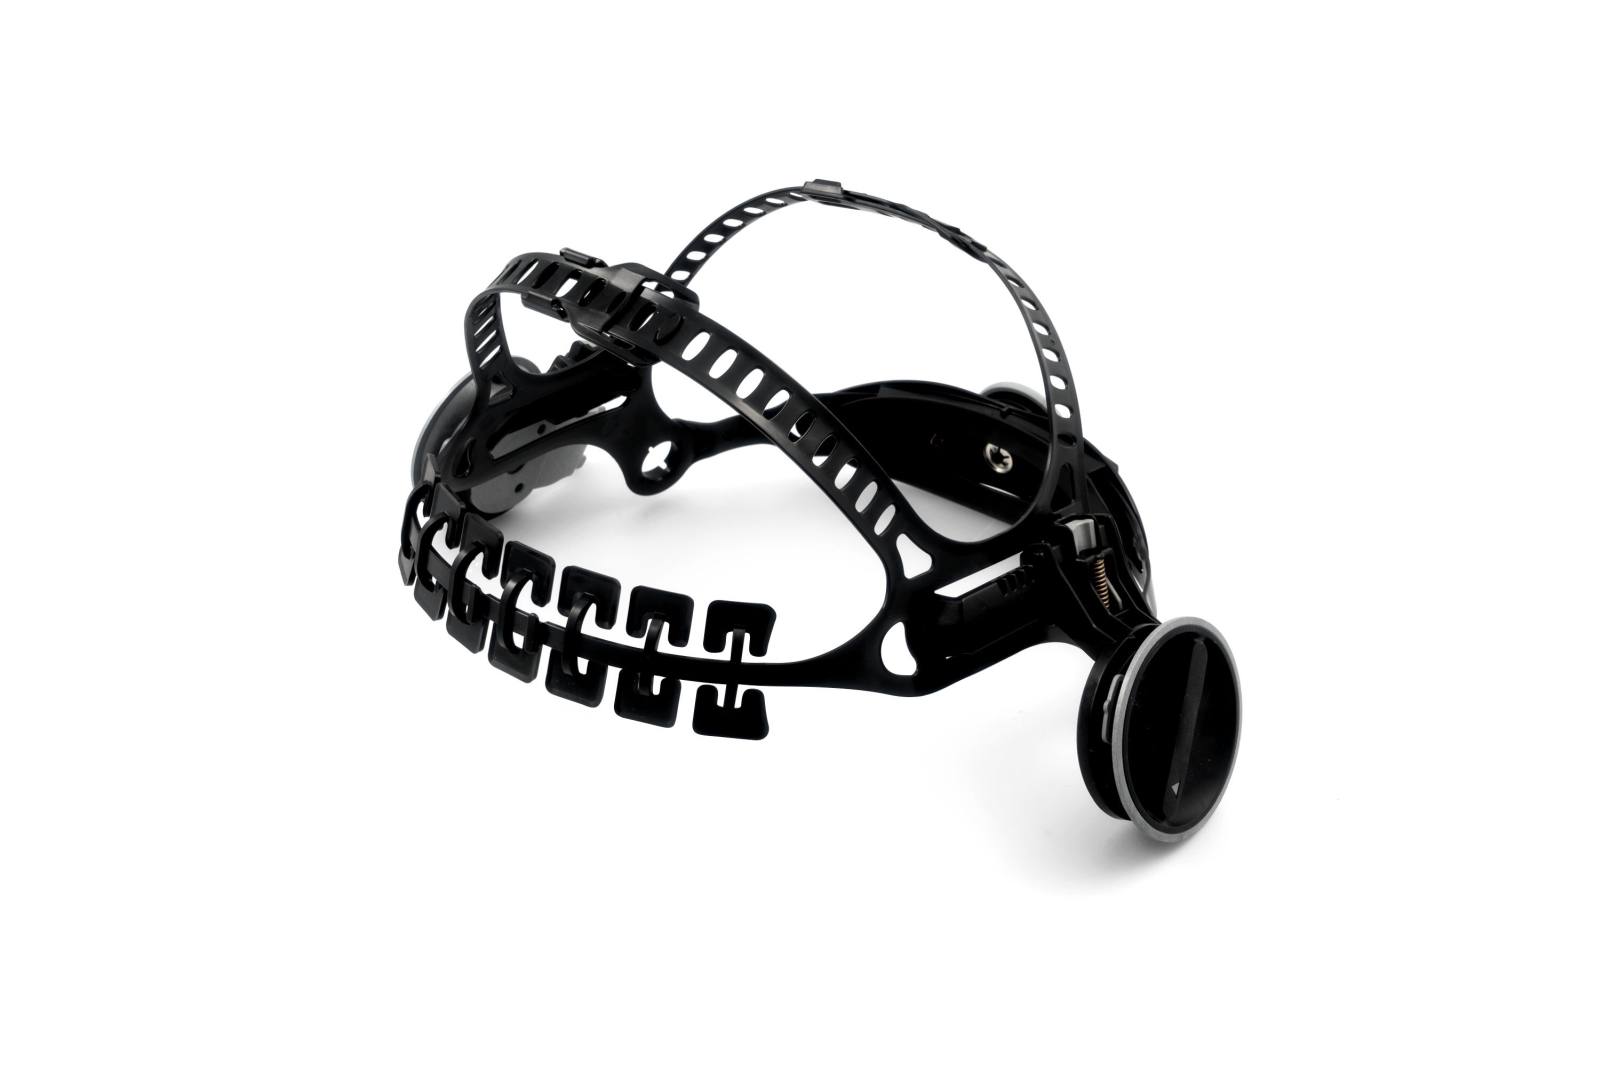 Casco 3M con juego de montaje para máscara de soldadura de alto rendimiento 3M Speedglas G5-01, H613200